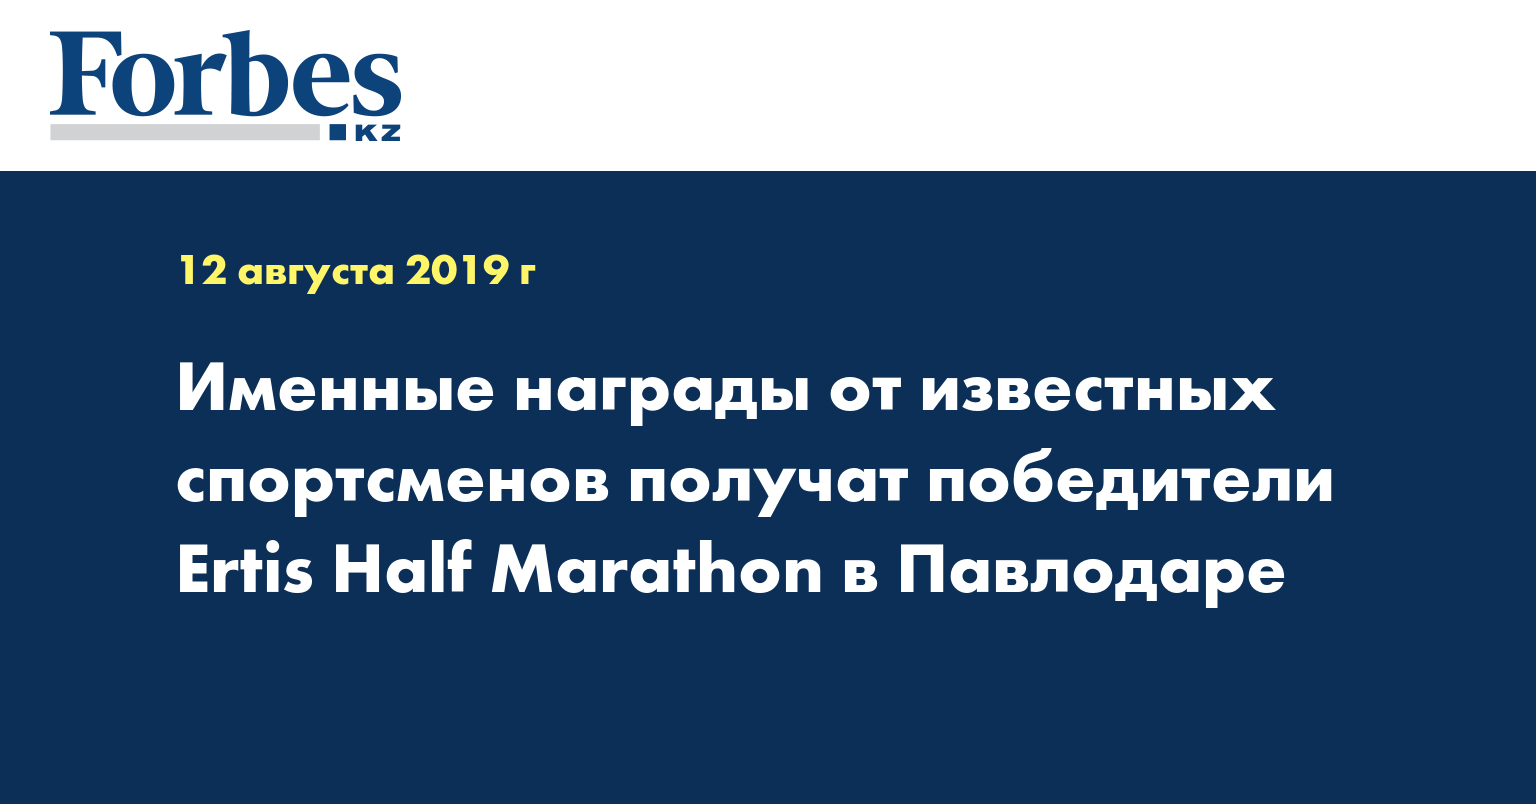 Именные награды от известных спортсменов получат победители Ertis Half Marathon в Павлодаре